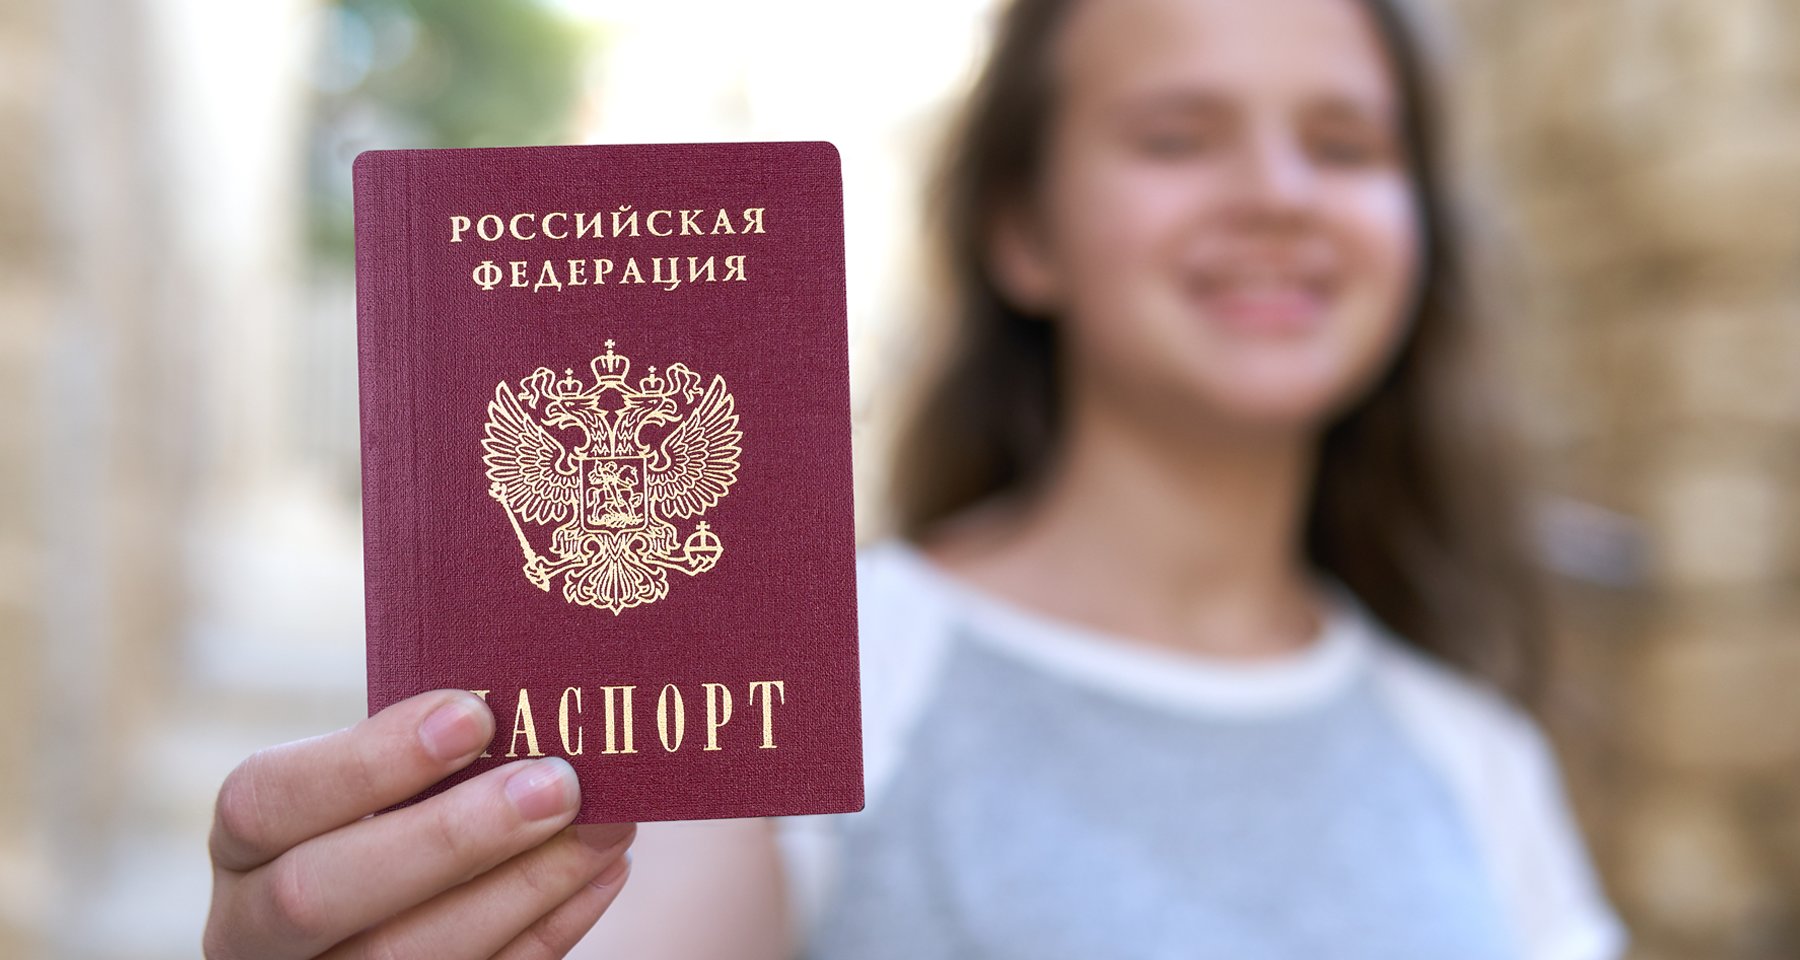 Как получить паспорт в 14 лет, необходимые документы и сколько делается |  Банки.ру